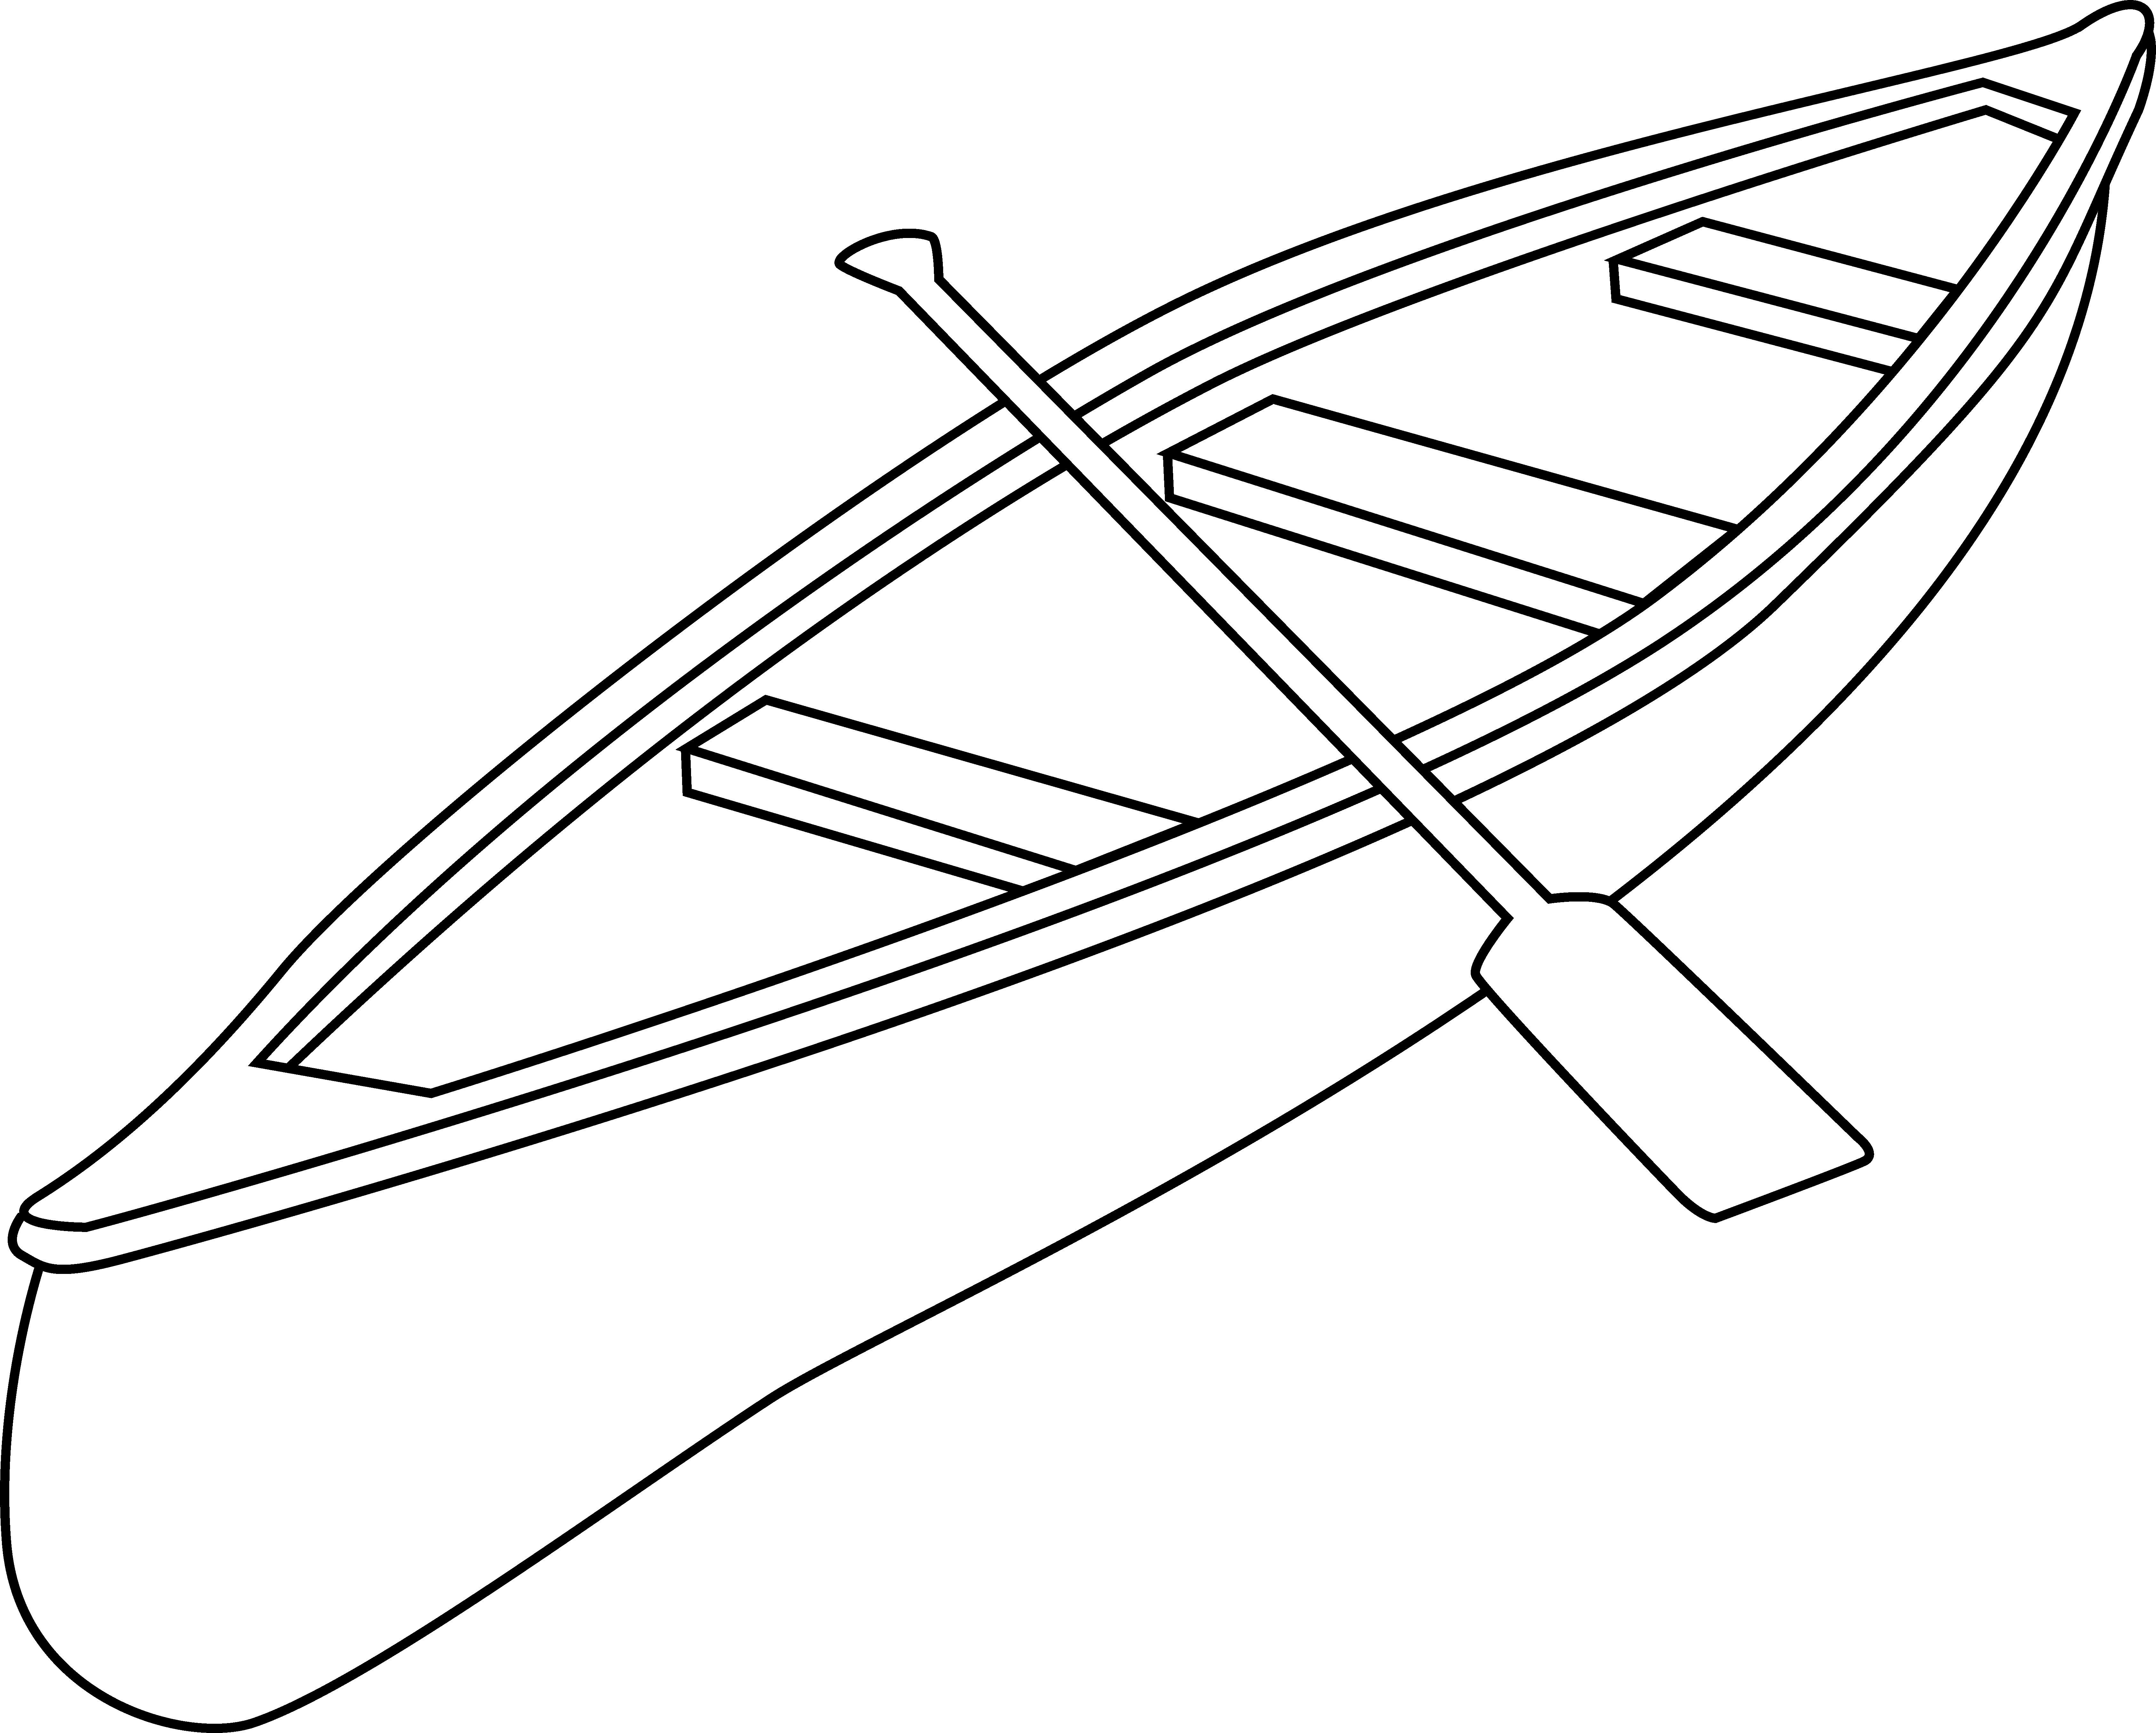 Free Canoe Clip Art Black and White Outline.